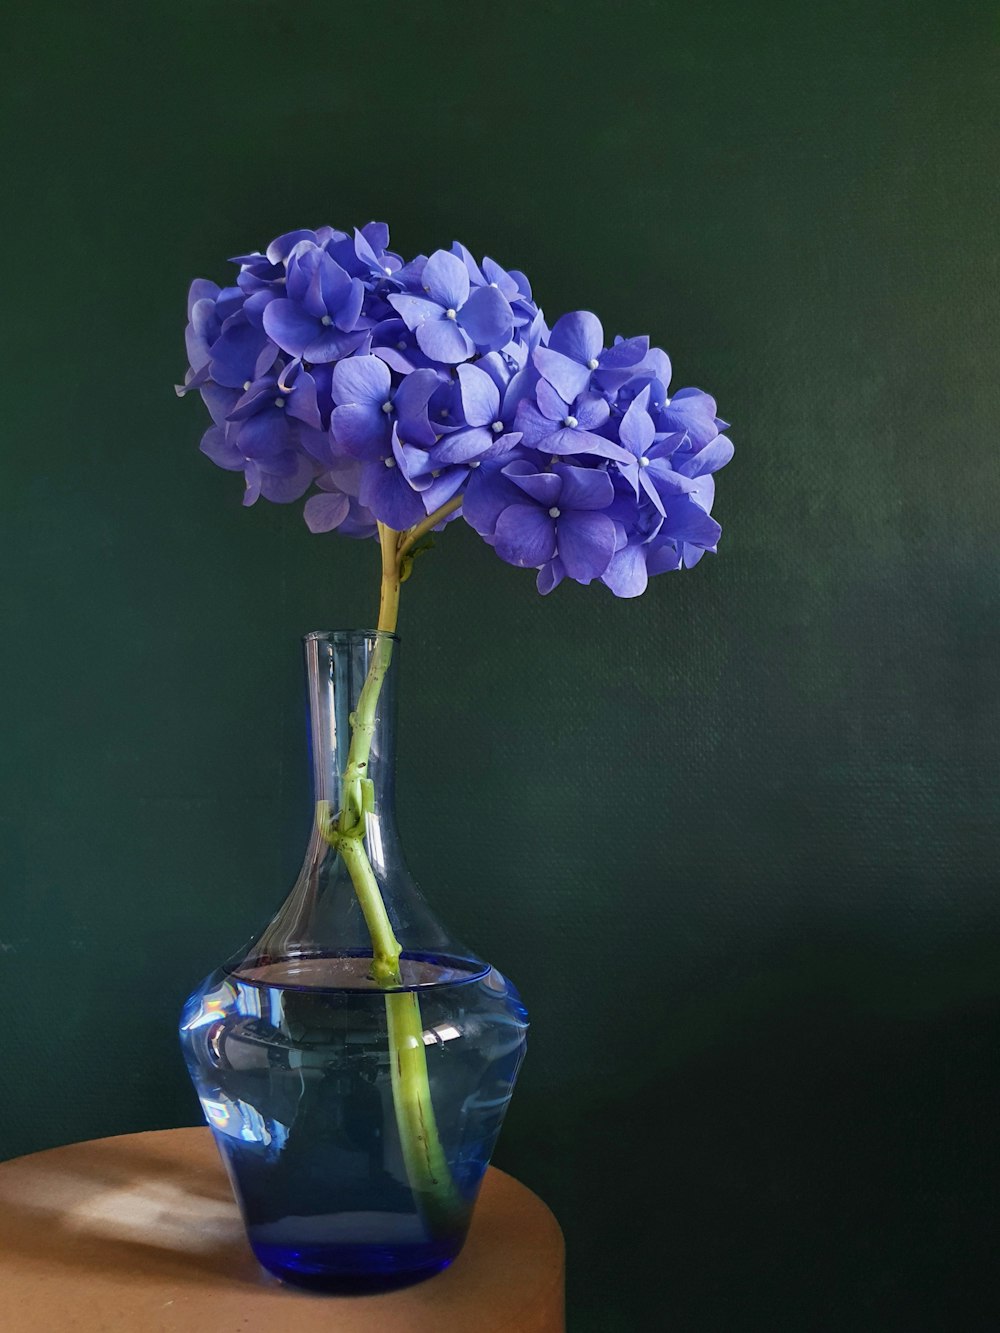 purple flower in blue glass vase